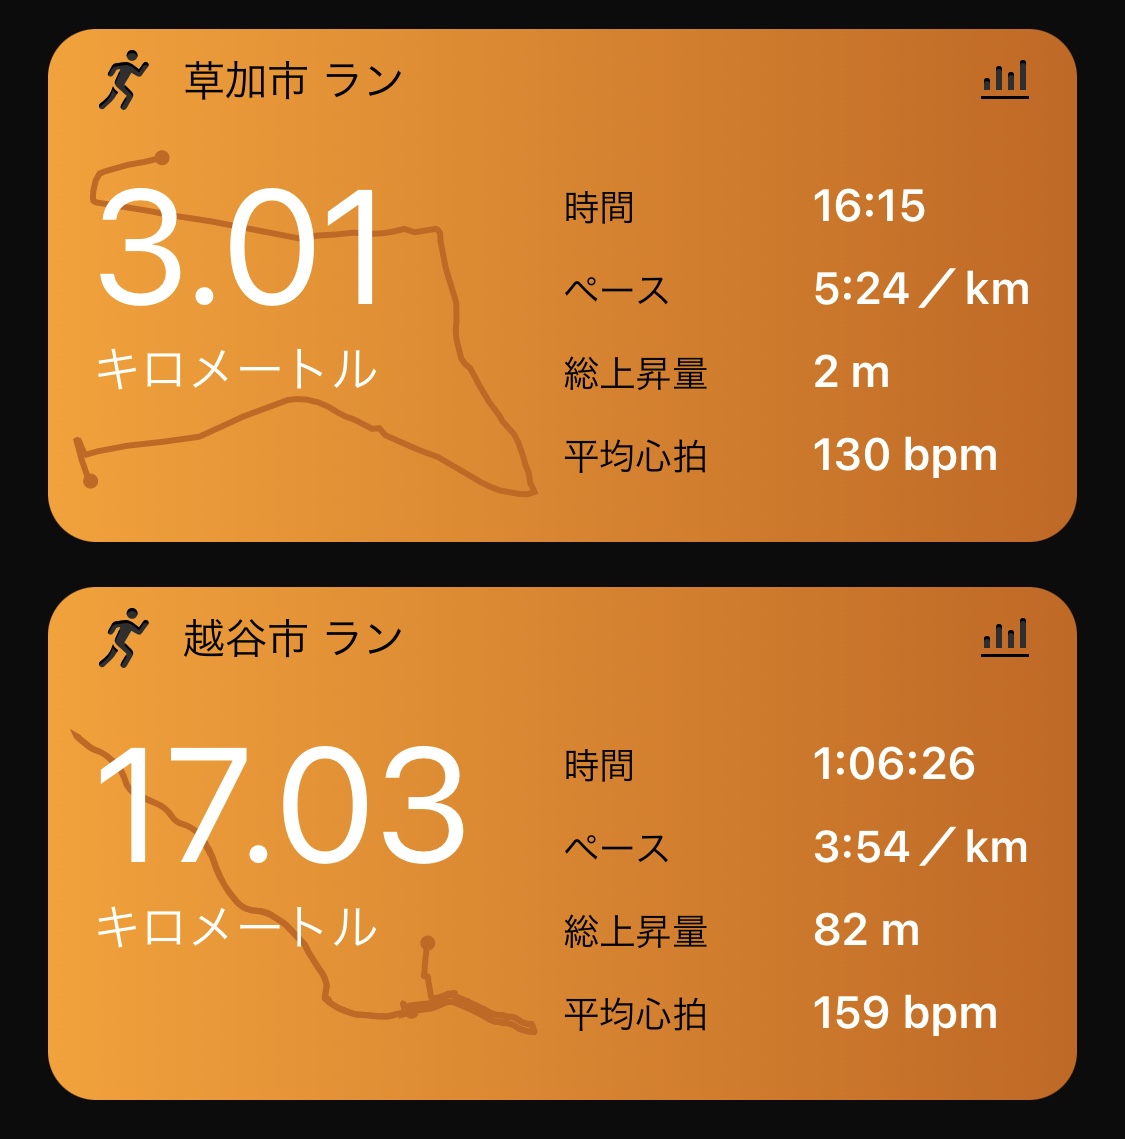 17km 3'54/km + 3km jog